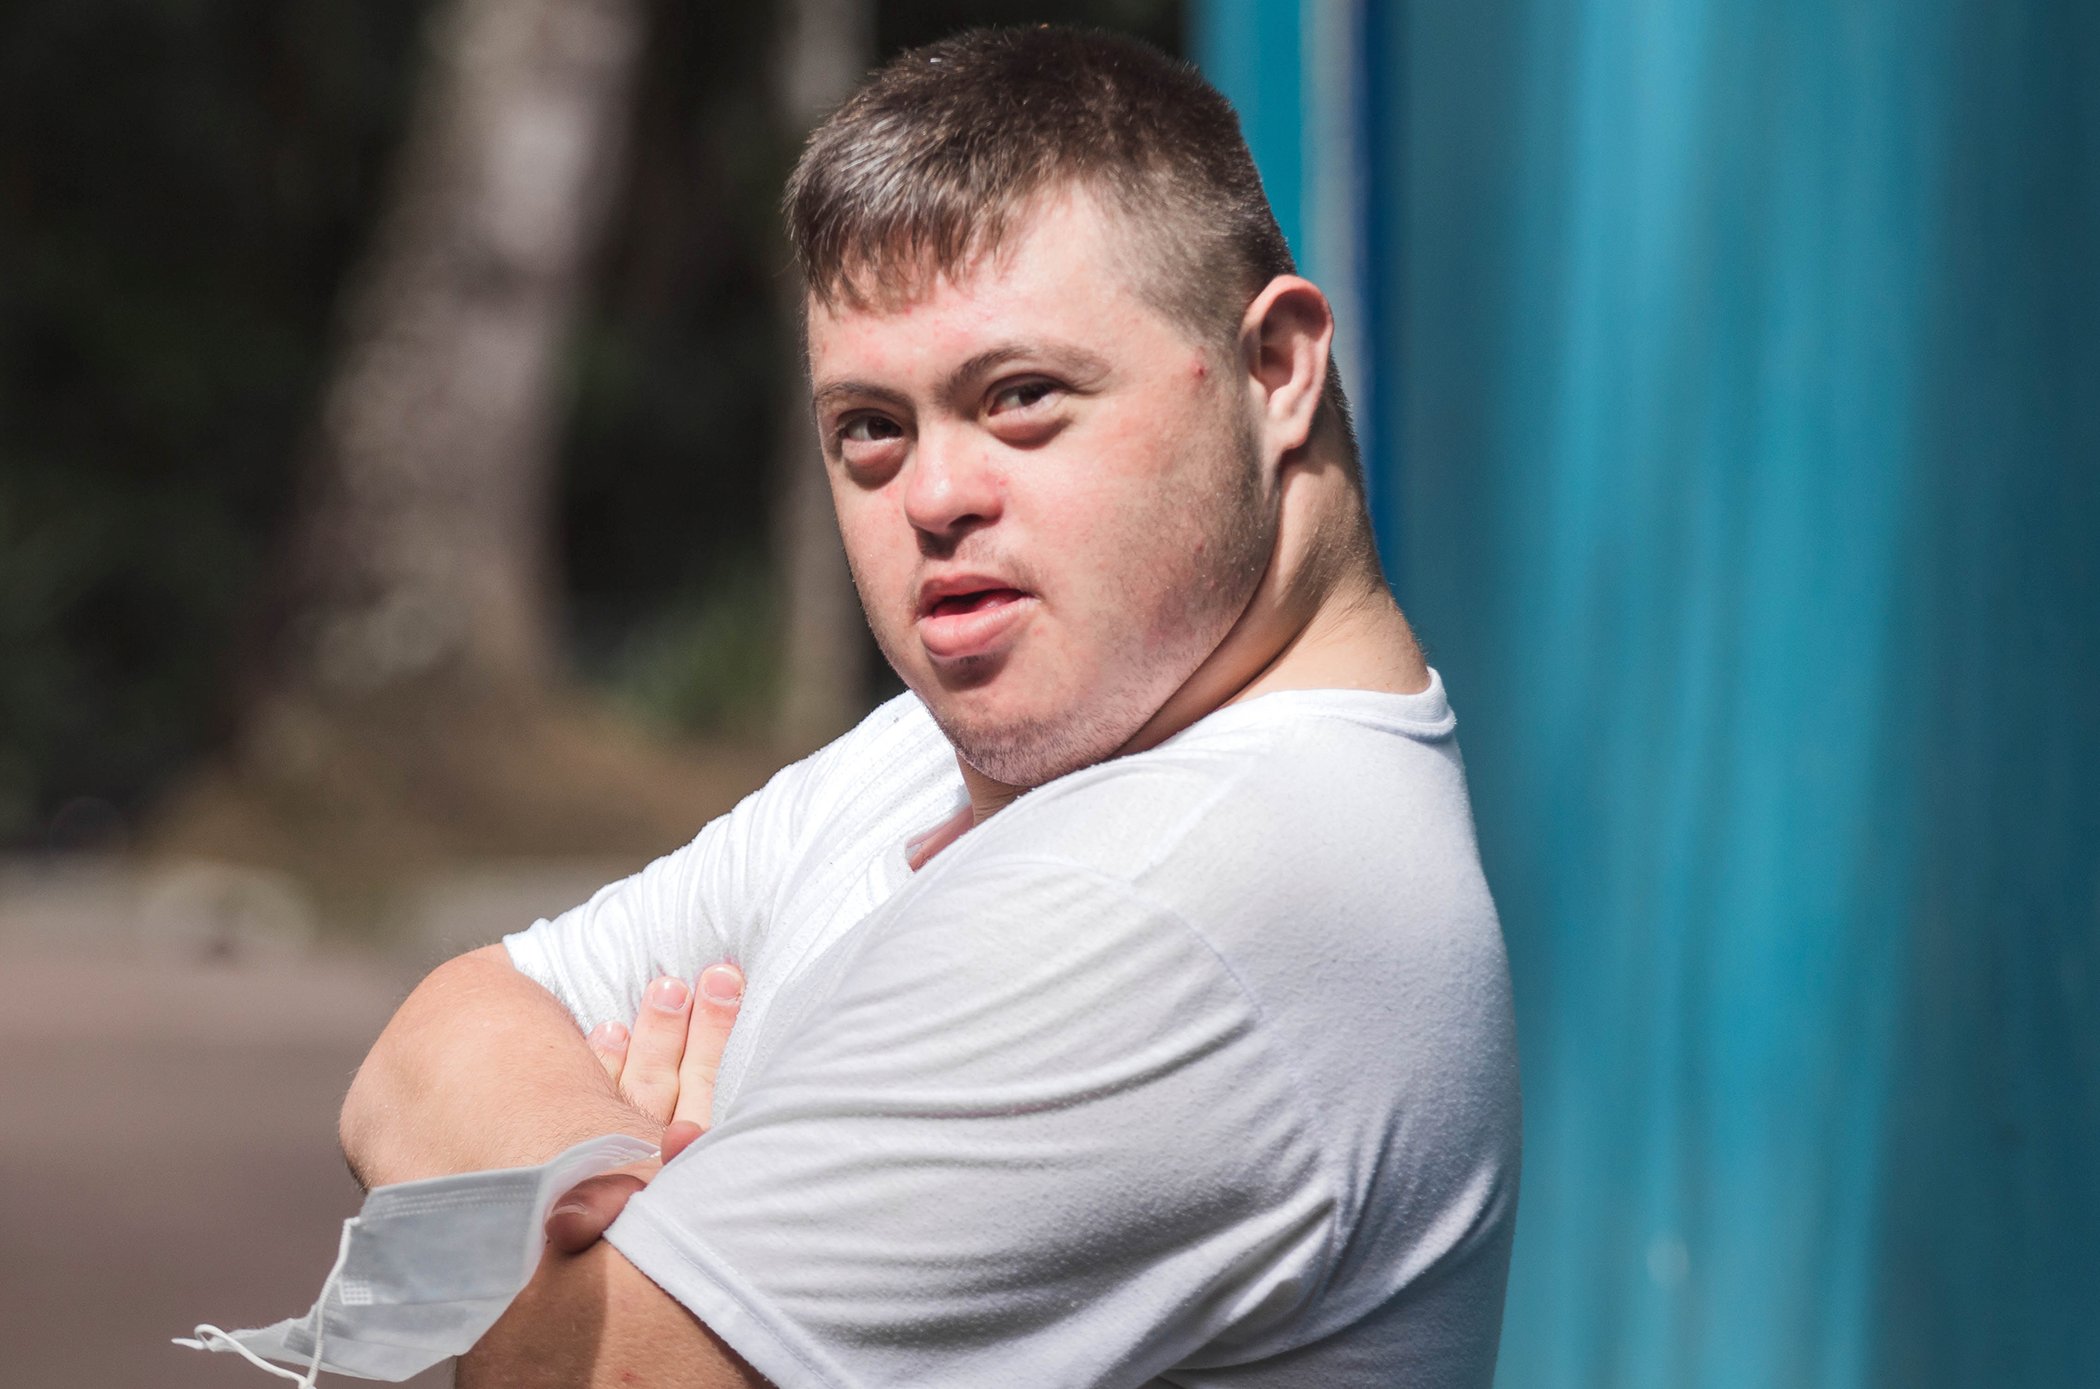 Festa Junina: Aluno com síndrome de Down da Apae Curitiba está no centro da imagem com os braços cruzados